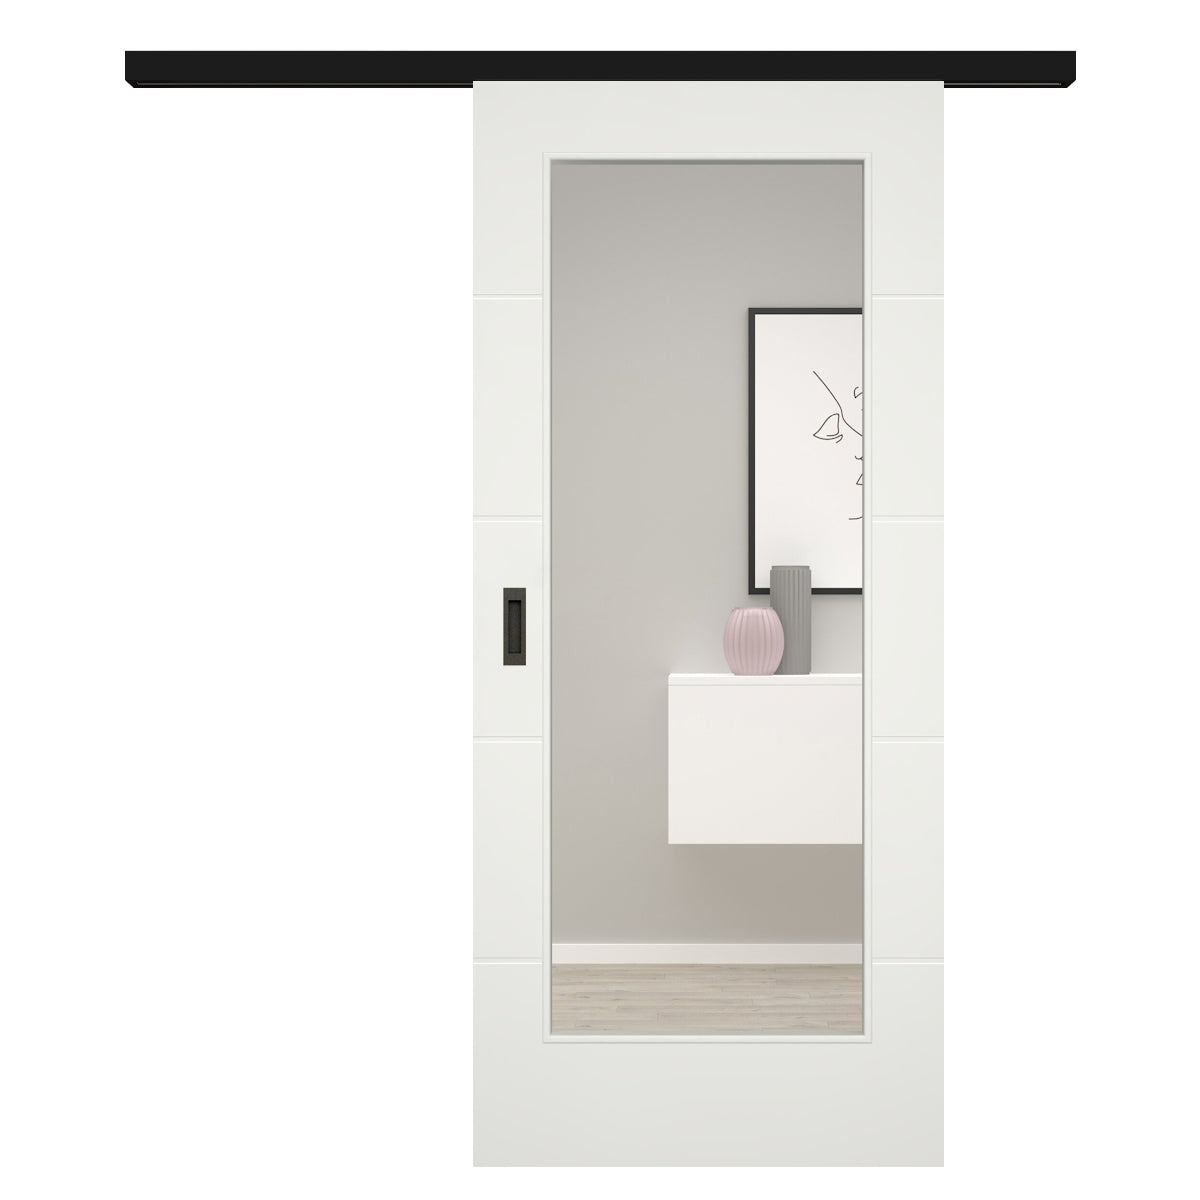 Schiebetür für Set mit schwarzem Laufkasten soft-weiß mit 4 Rillen und Lichtausschnitt - Modell Designtür Q41LA